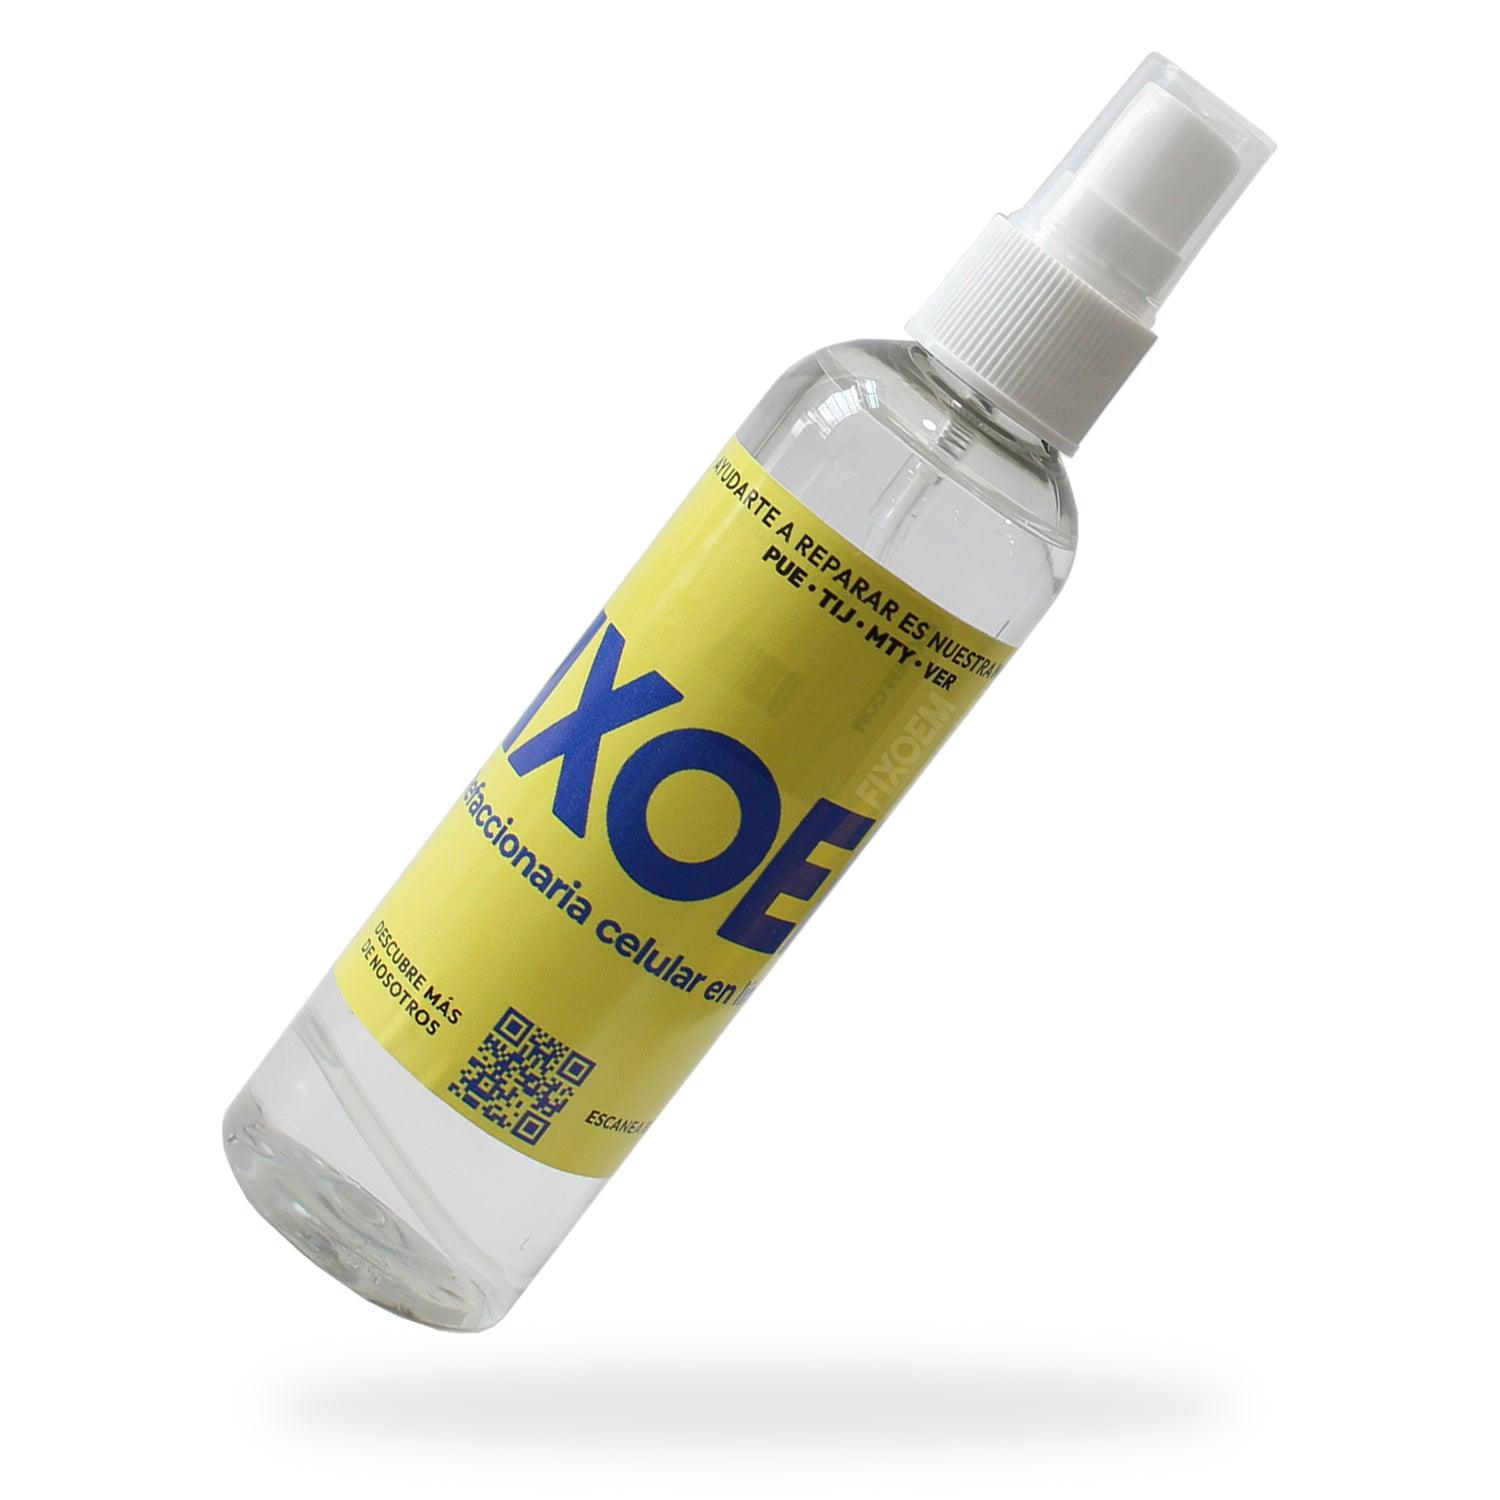 Atomizador Frasco Spray Botella a solo $ 20.00 Refaccion y puestos celulares, refurbish y microelectronica.- FixOEM